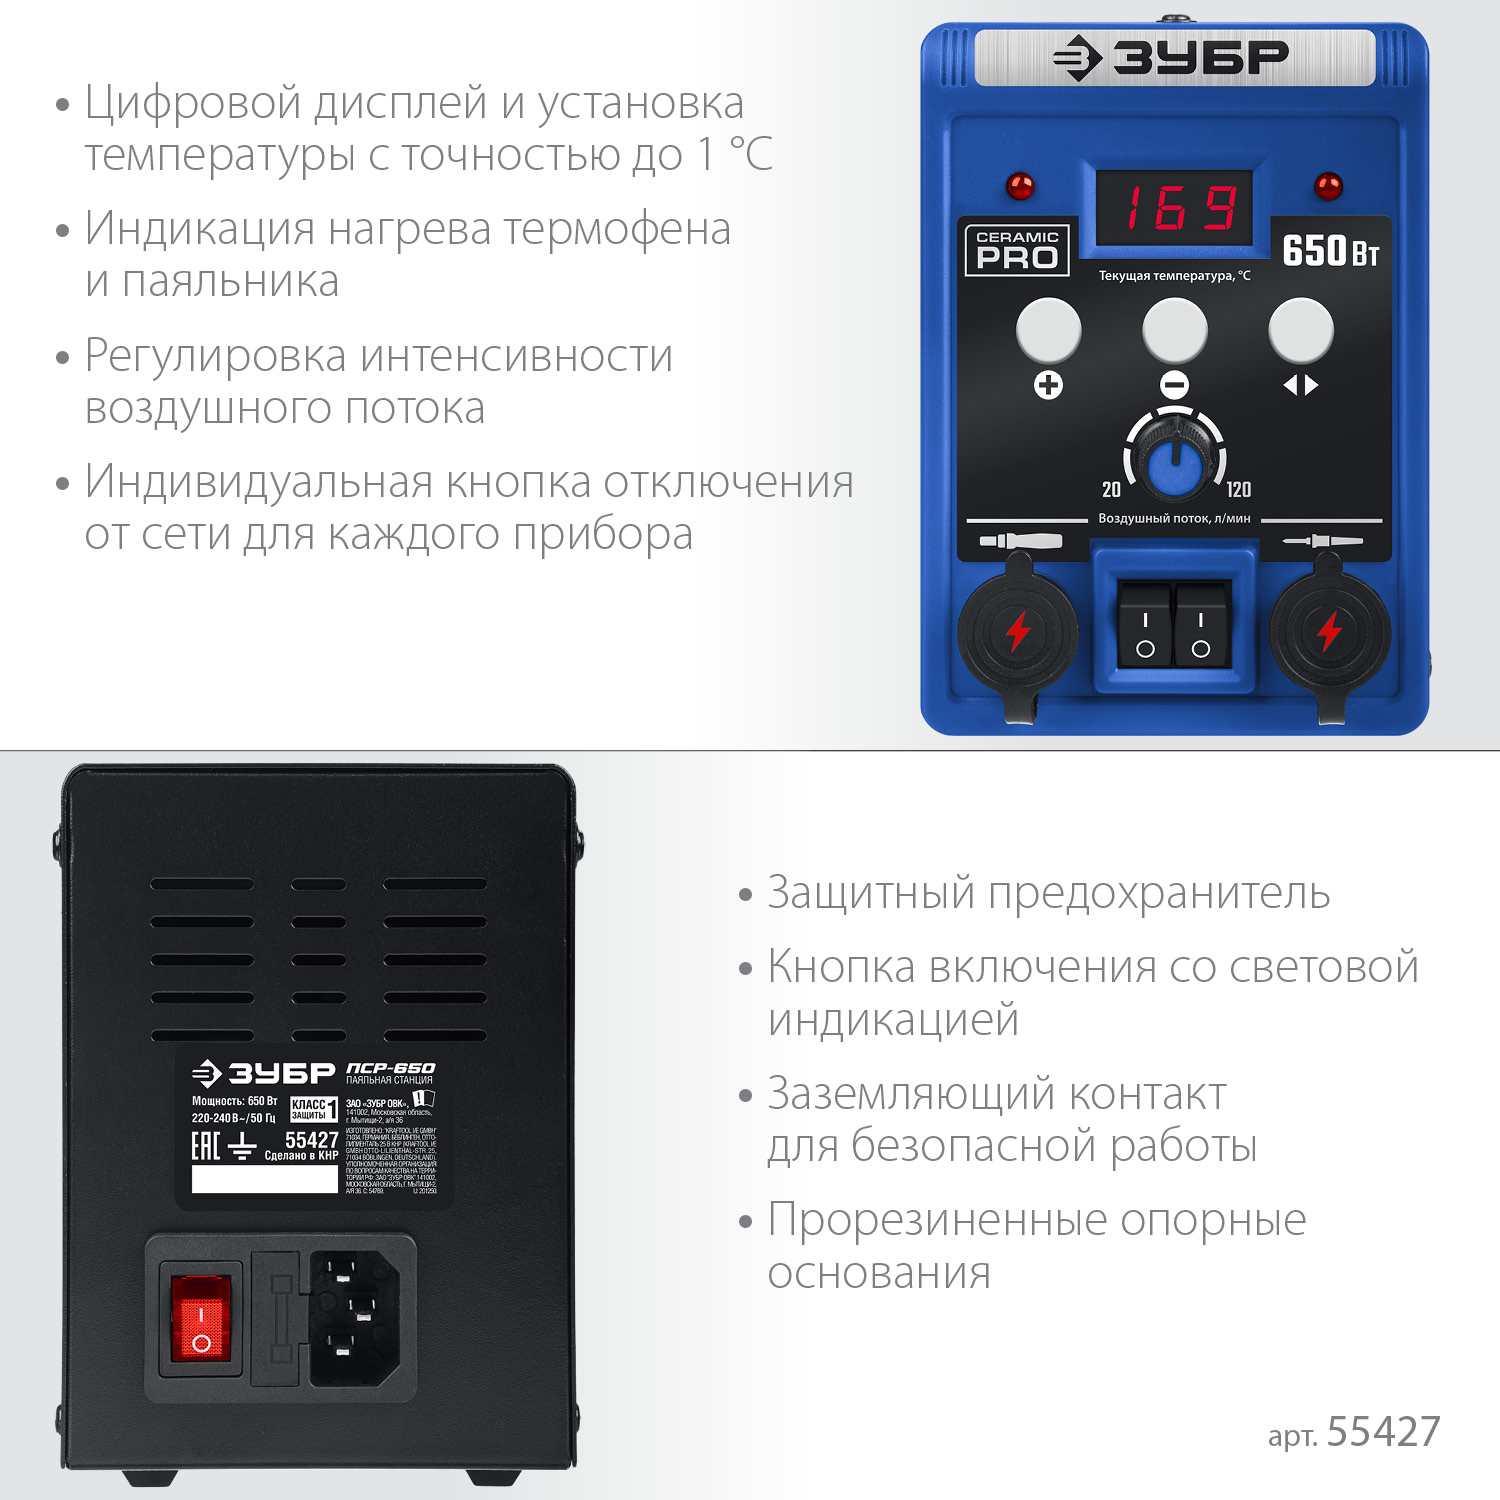 ЗУБР ПСР-650, 100 - 500°С, 650 Вт, 2 в 1, ремонтная паяльная станция, Профессионал (55427)